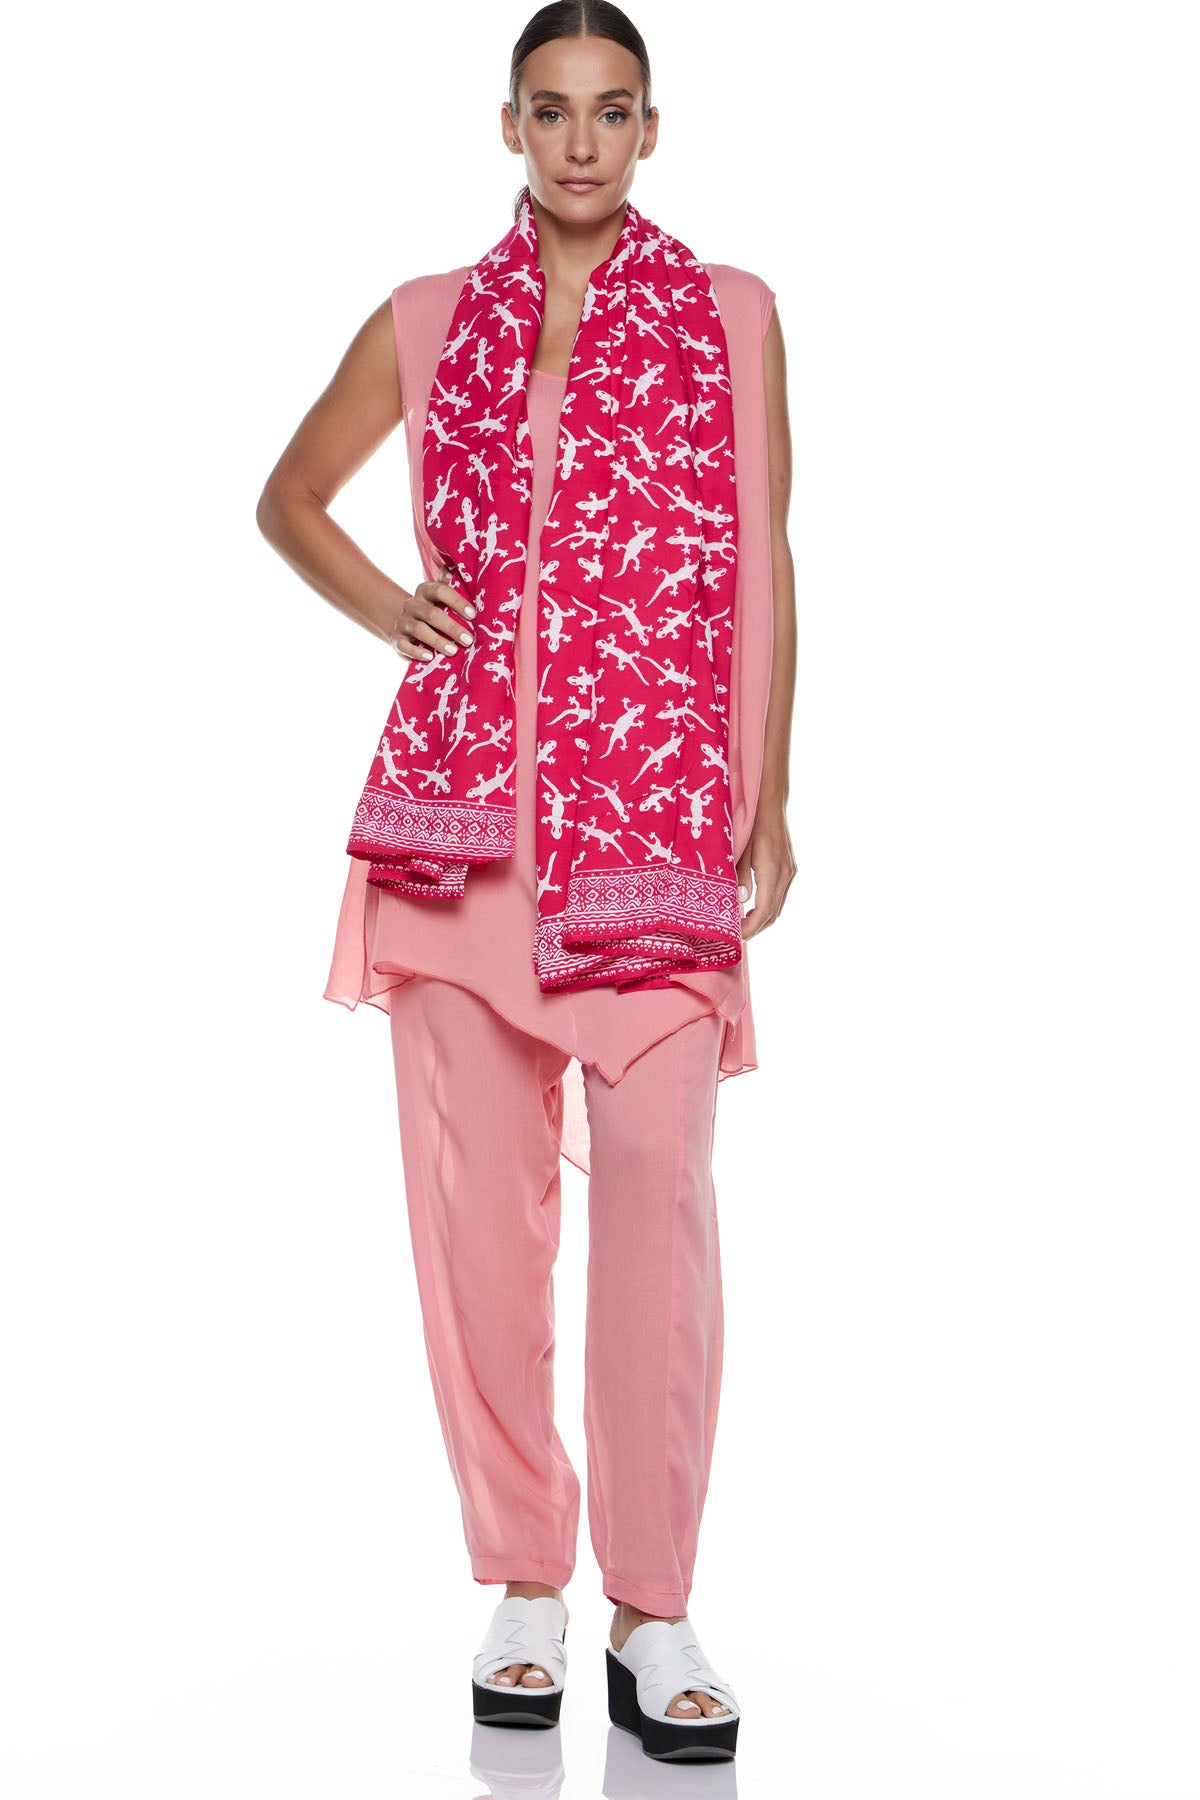 Chic & Simple Combination of Mirella Top & Myrtle Pants & Vivian Scarf - Pink